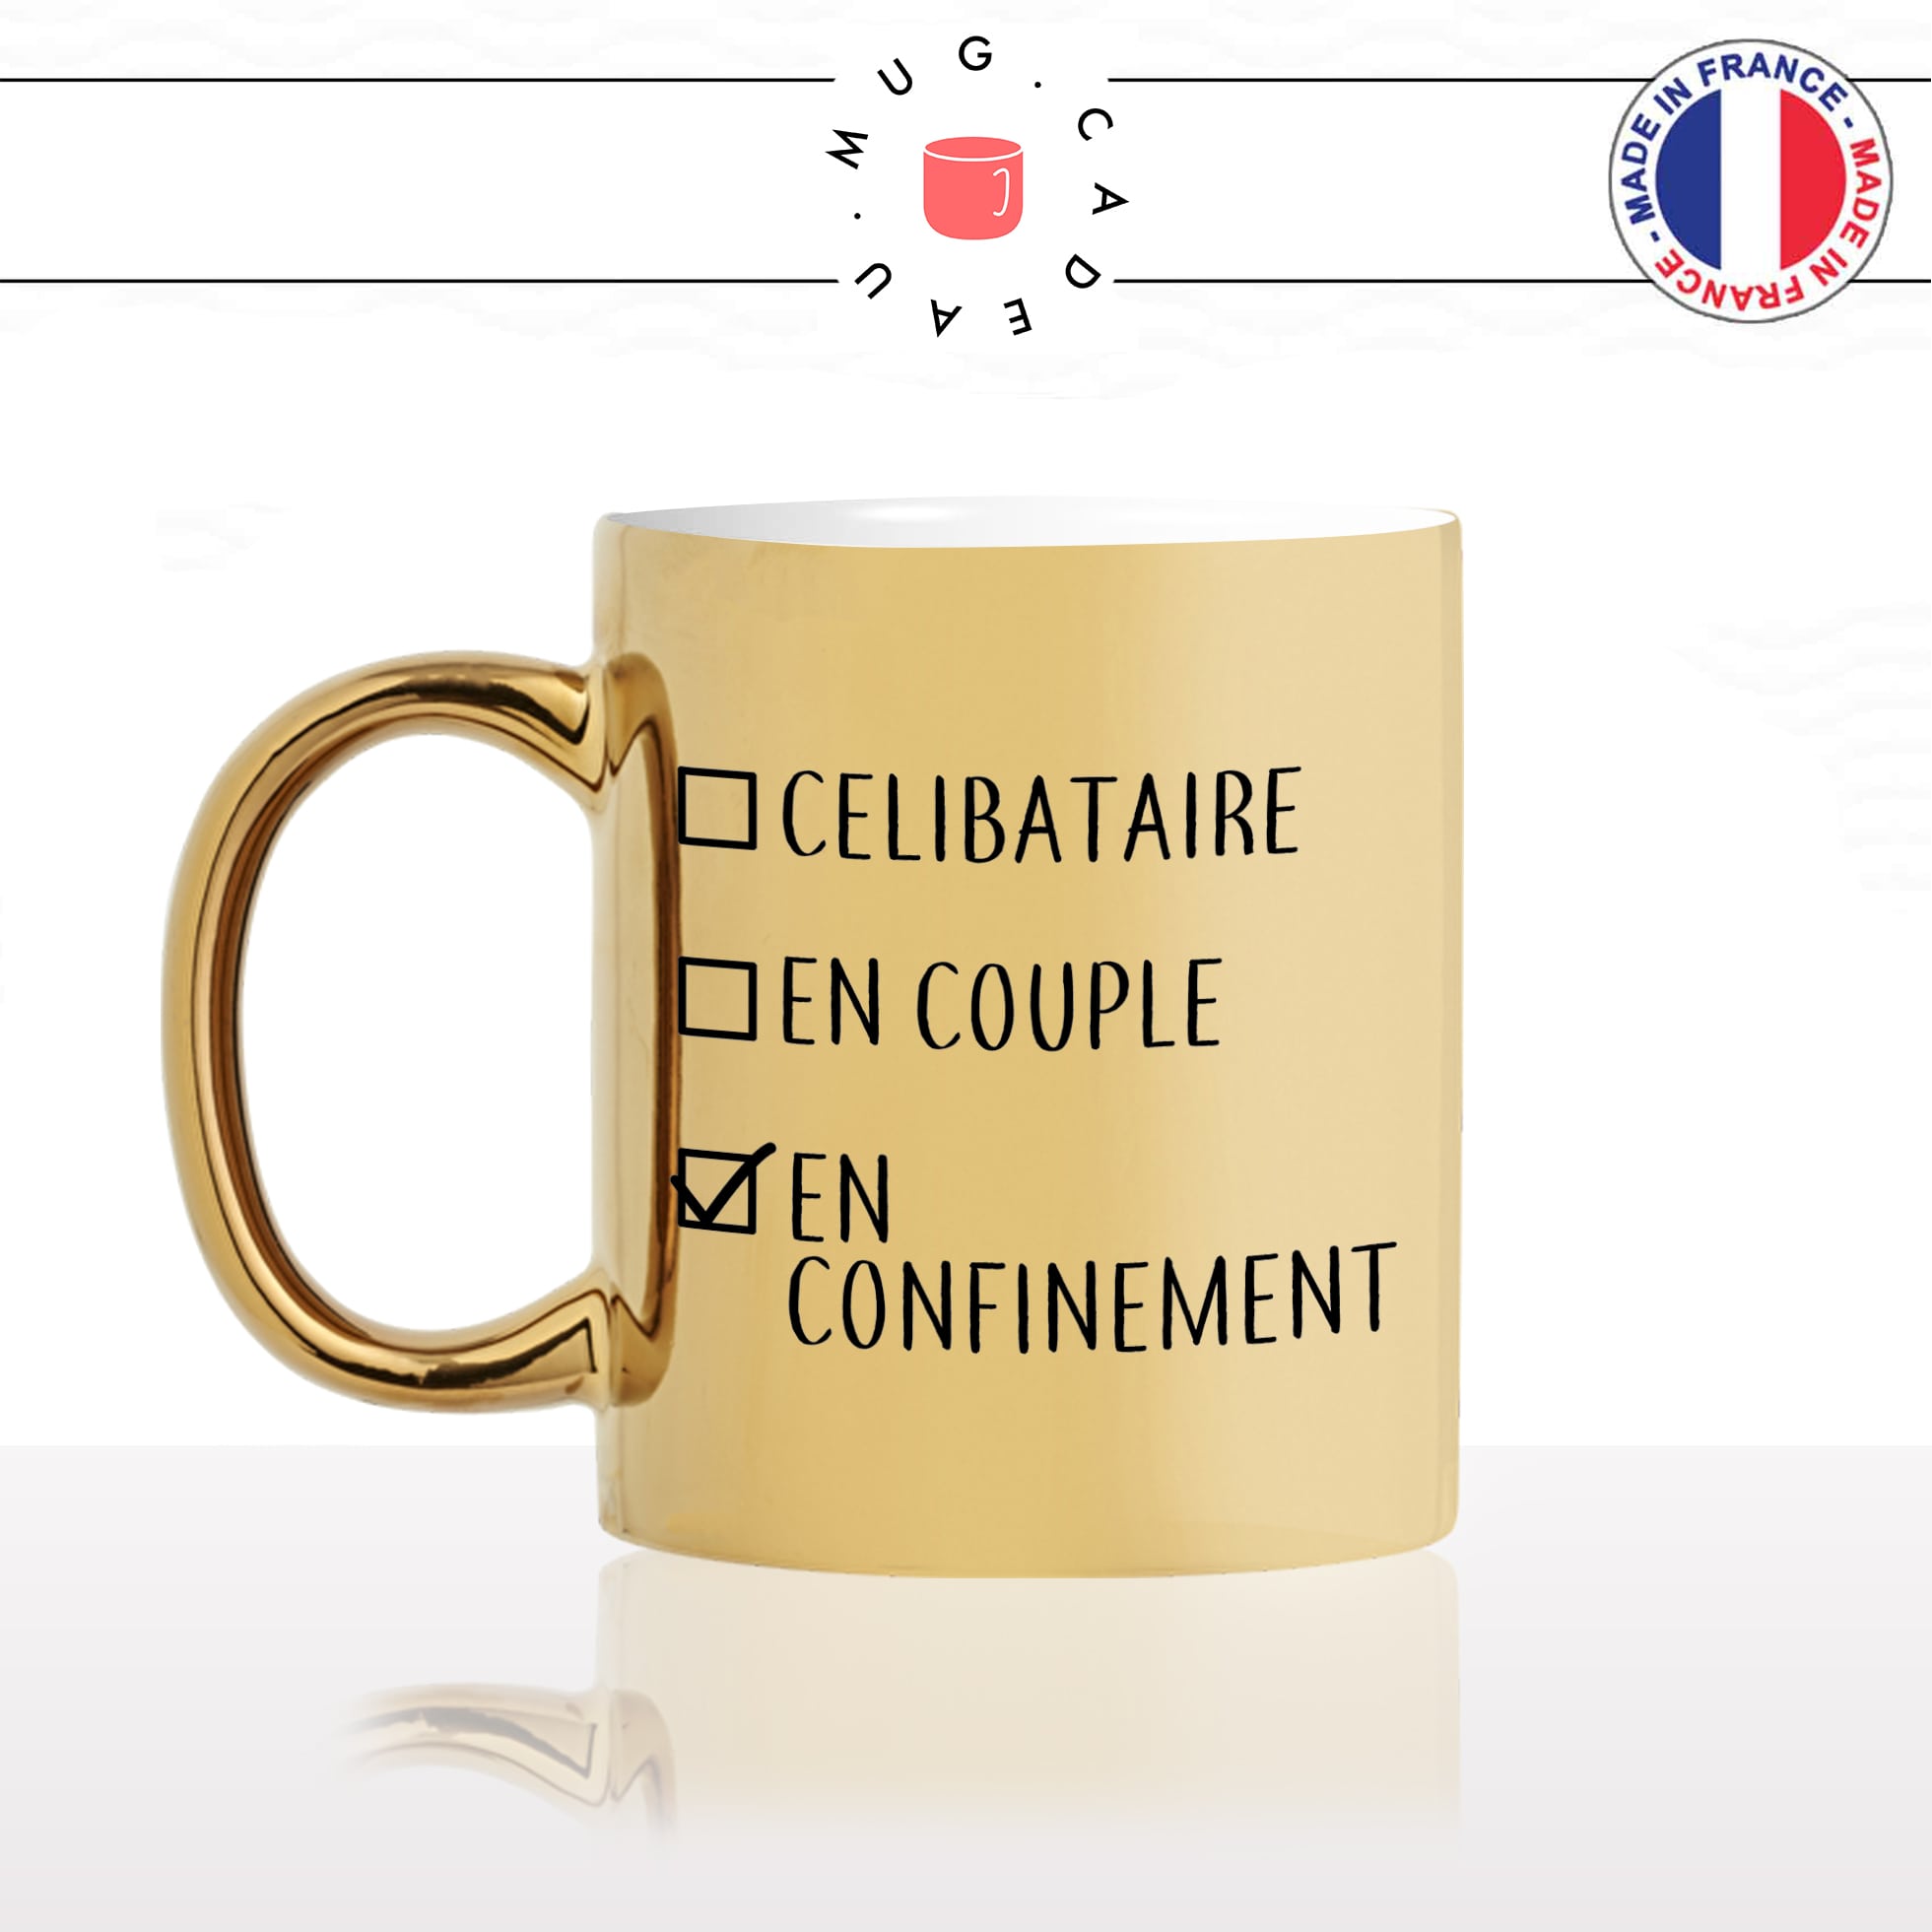 mug-tasse-doré-or-gold-célibataire-couple-confinement-confiné-covid-drole-cool-humour-fun-idée-cadeau-personnalisé-café-thé-min